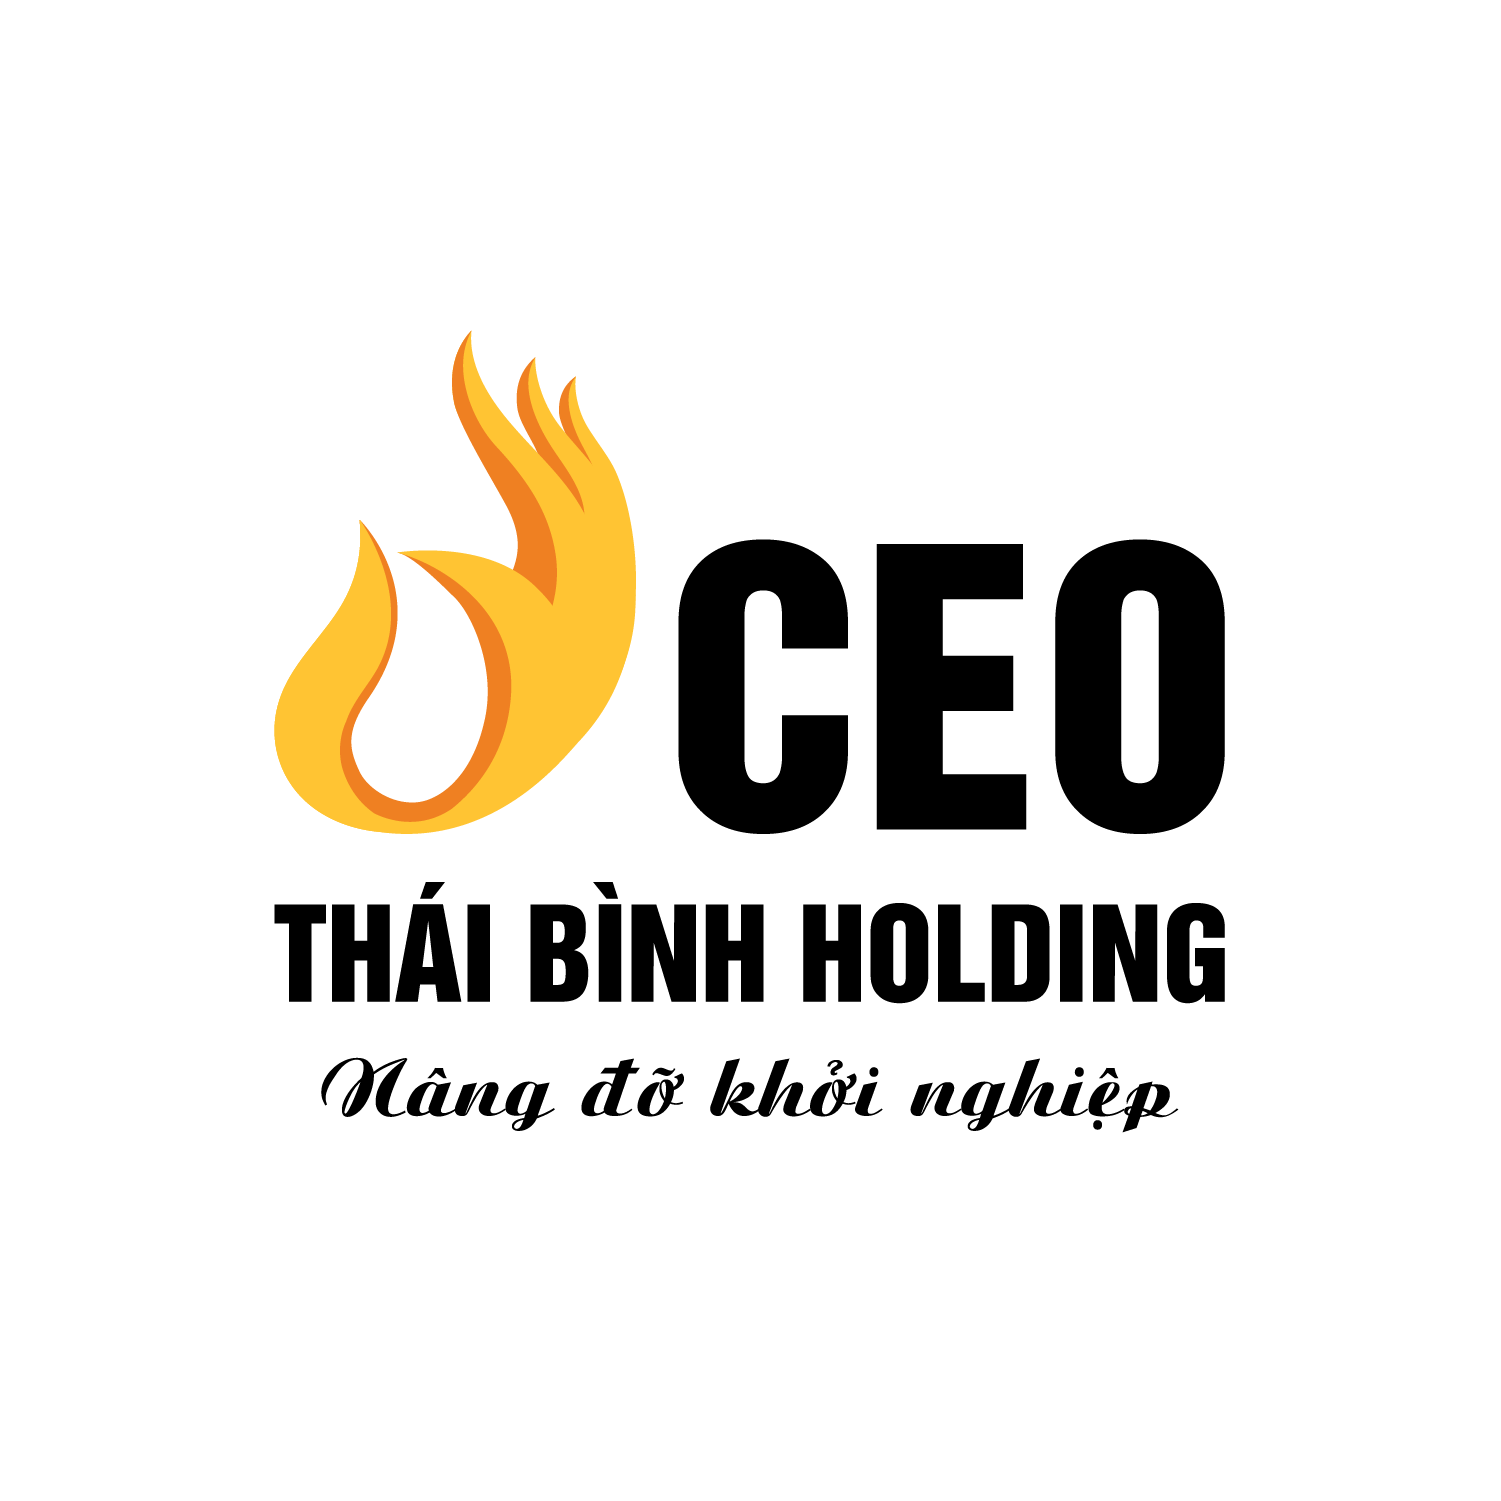 Công ty Cổ phần CEO Thái Bình Holding tuyển dụng Trưởng Nhóm Truyền Thông lương thưởng hấp dẫn, chế độ đãi ngộ cao, môi trường chuyên nghiệp